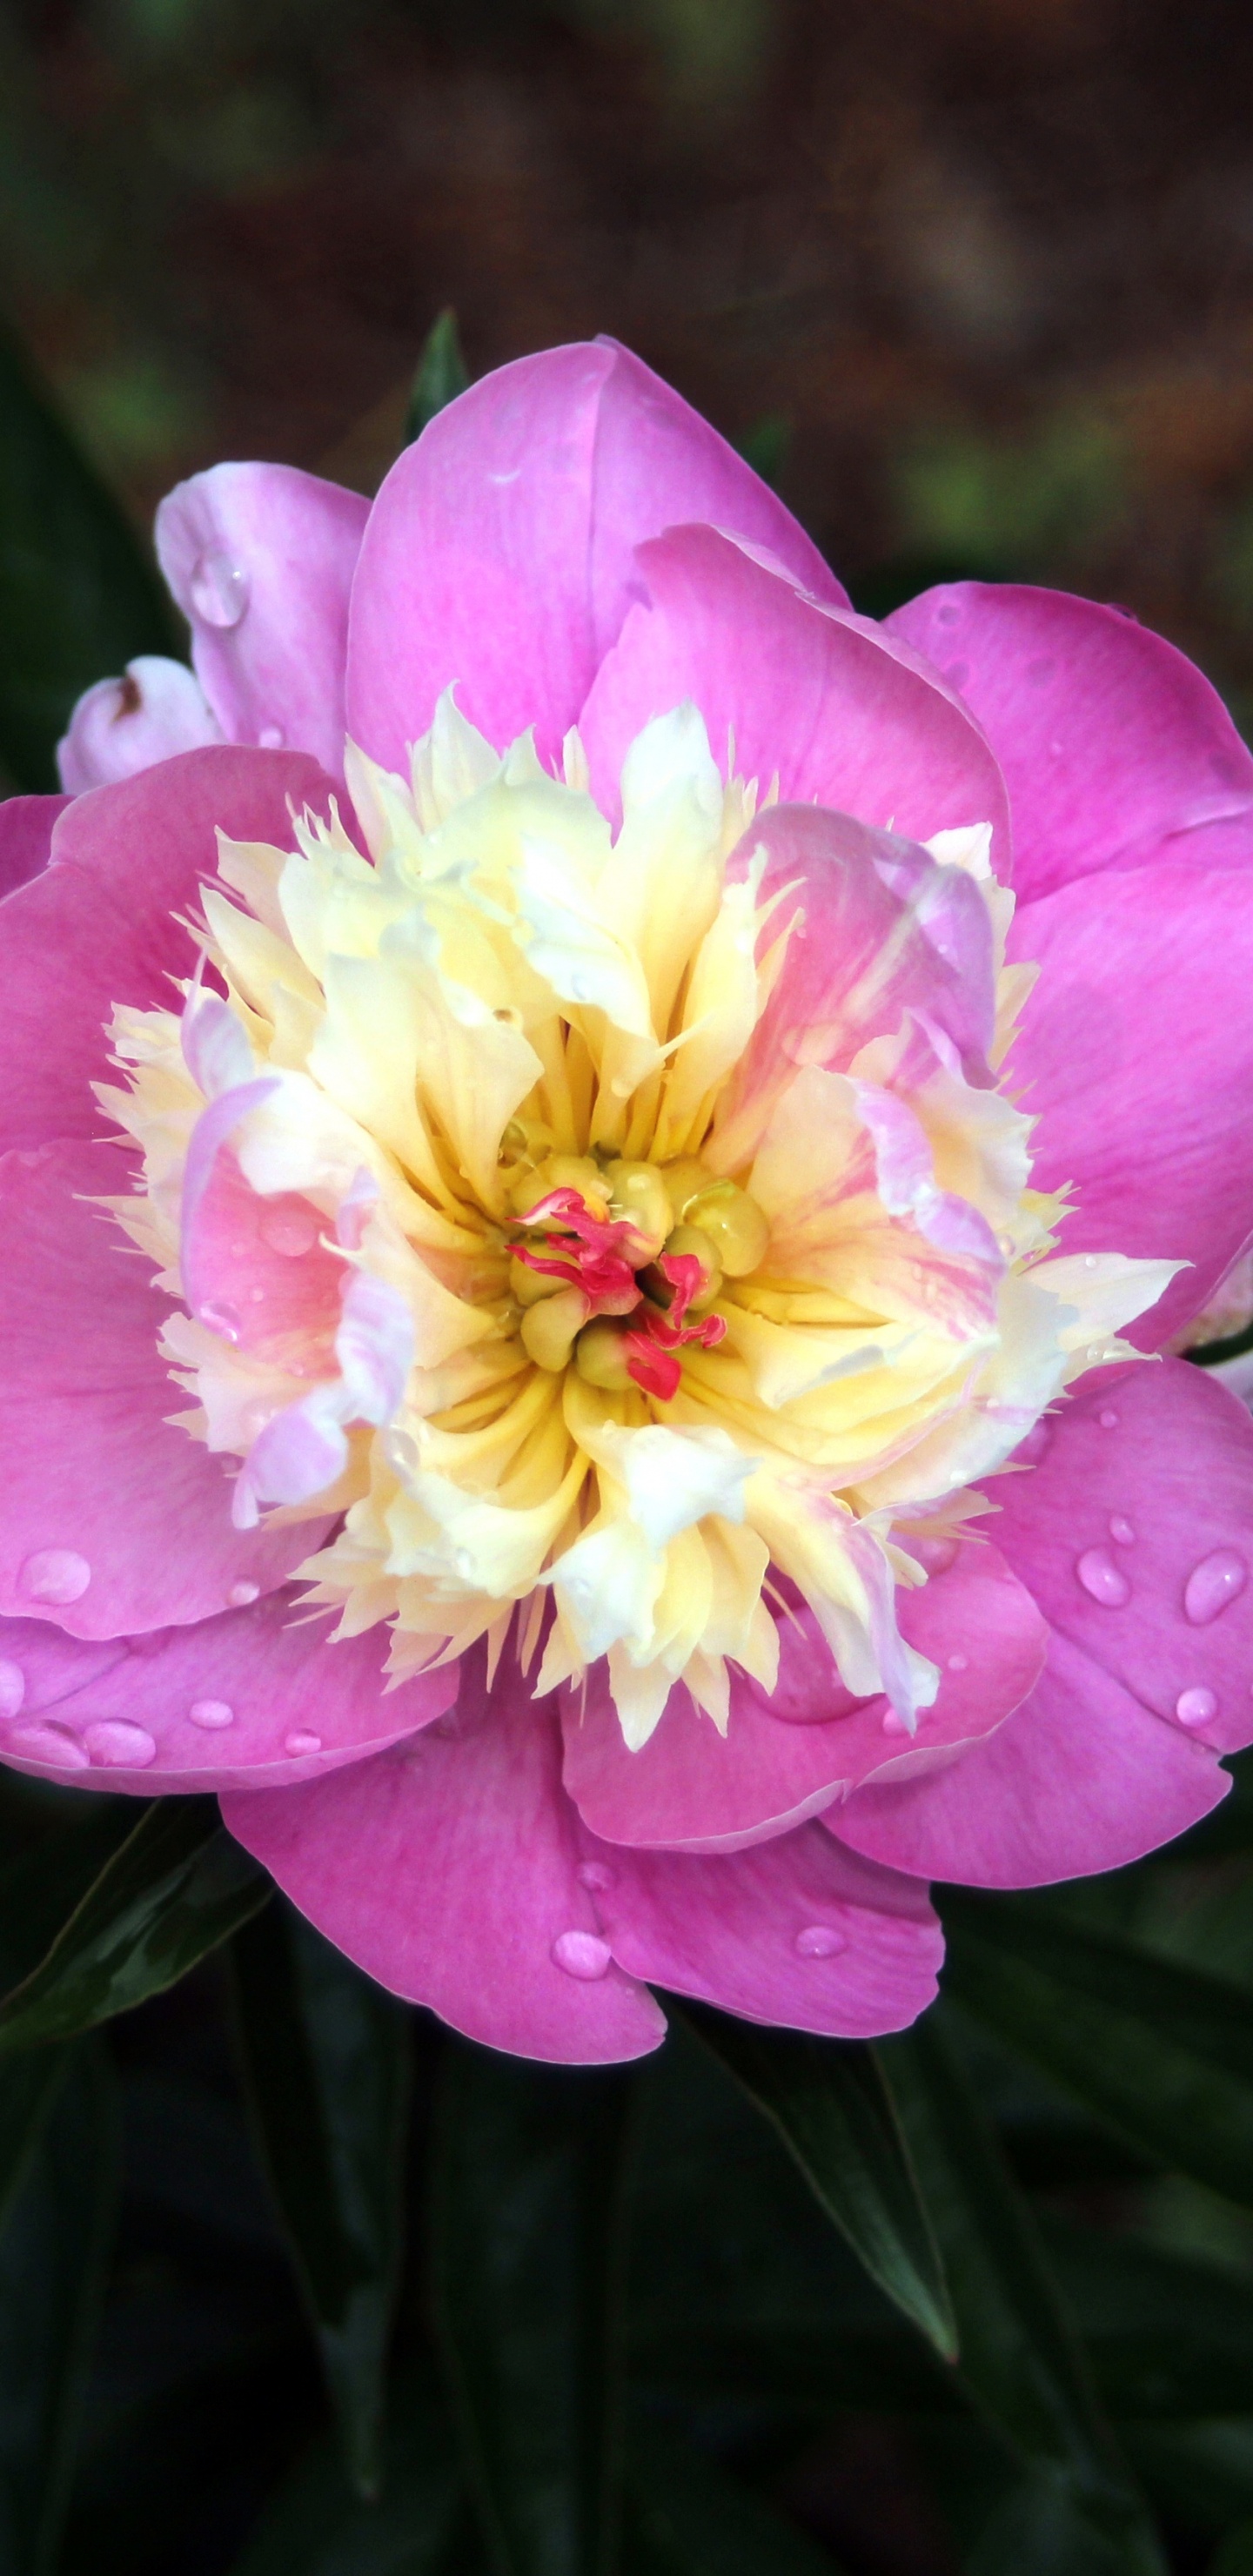 Pink Flower in Tilt Shift Lens. Wallpaper in 1440x2960 Resolution